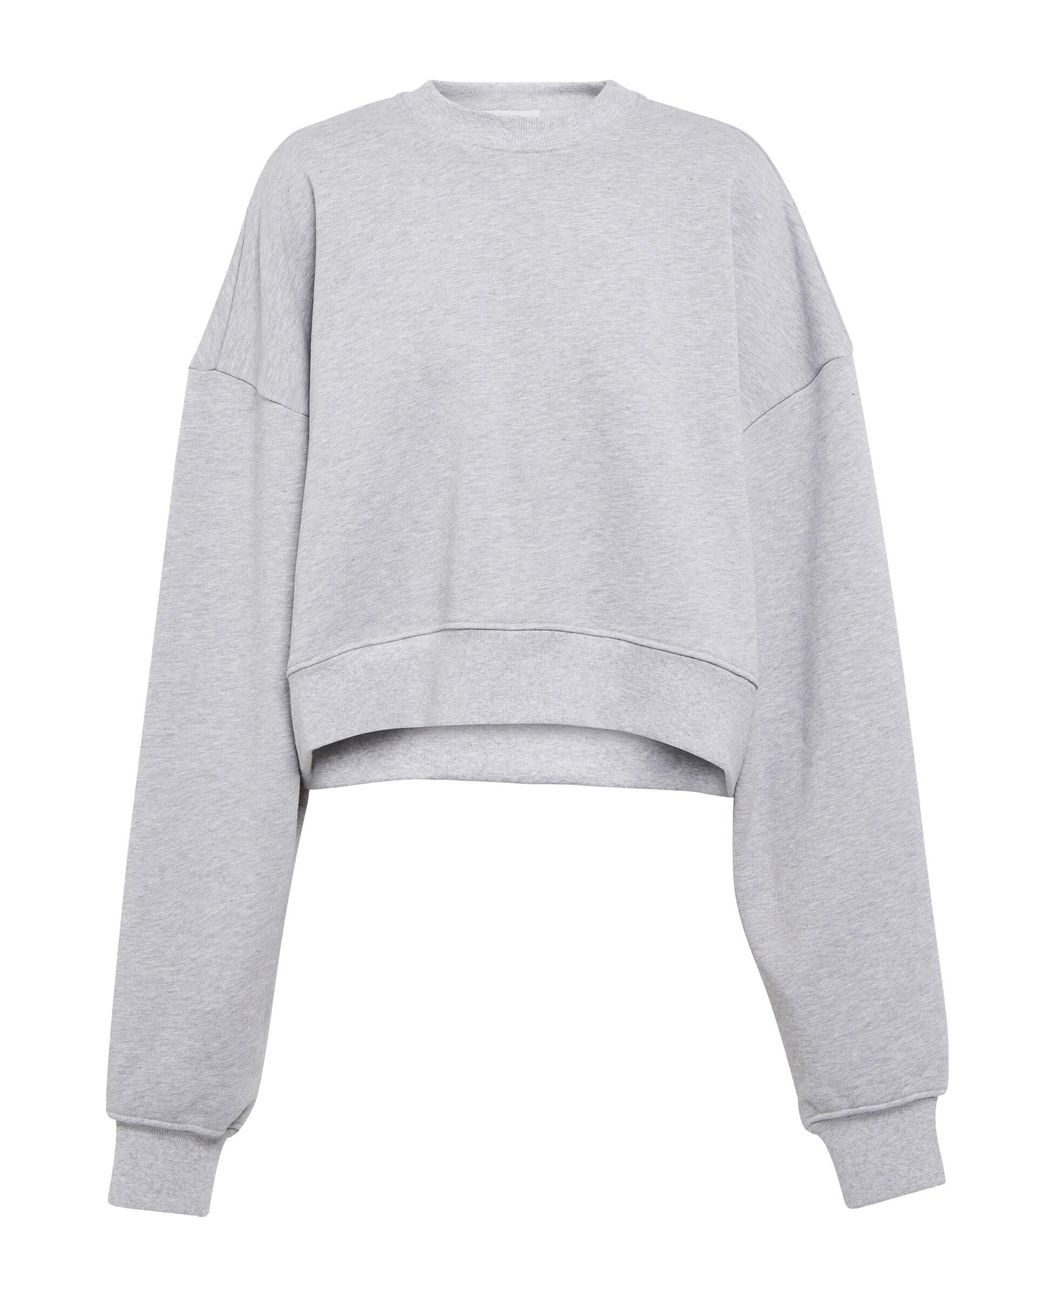 Wardrobe NYC X Hailey Bieber Cotton Sweatshirt in Gray | Lyst